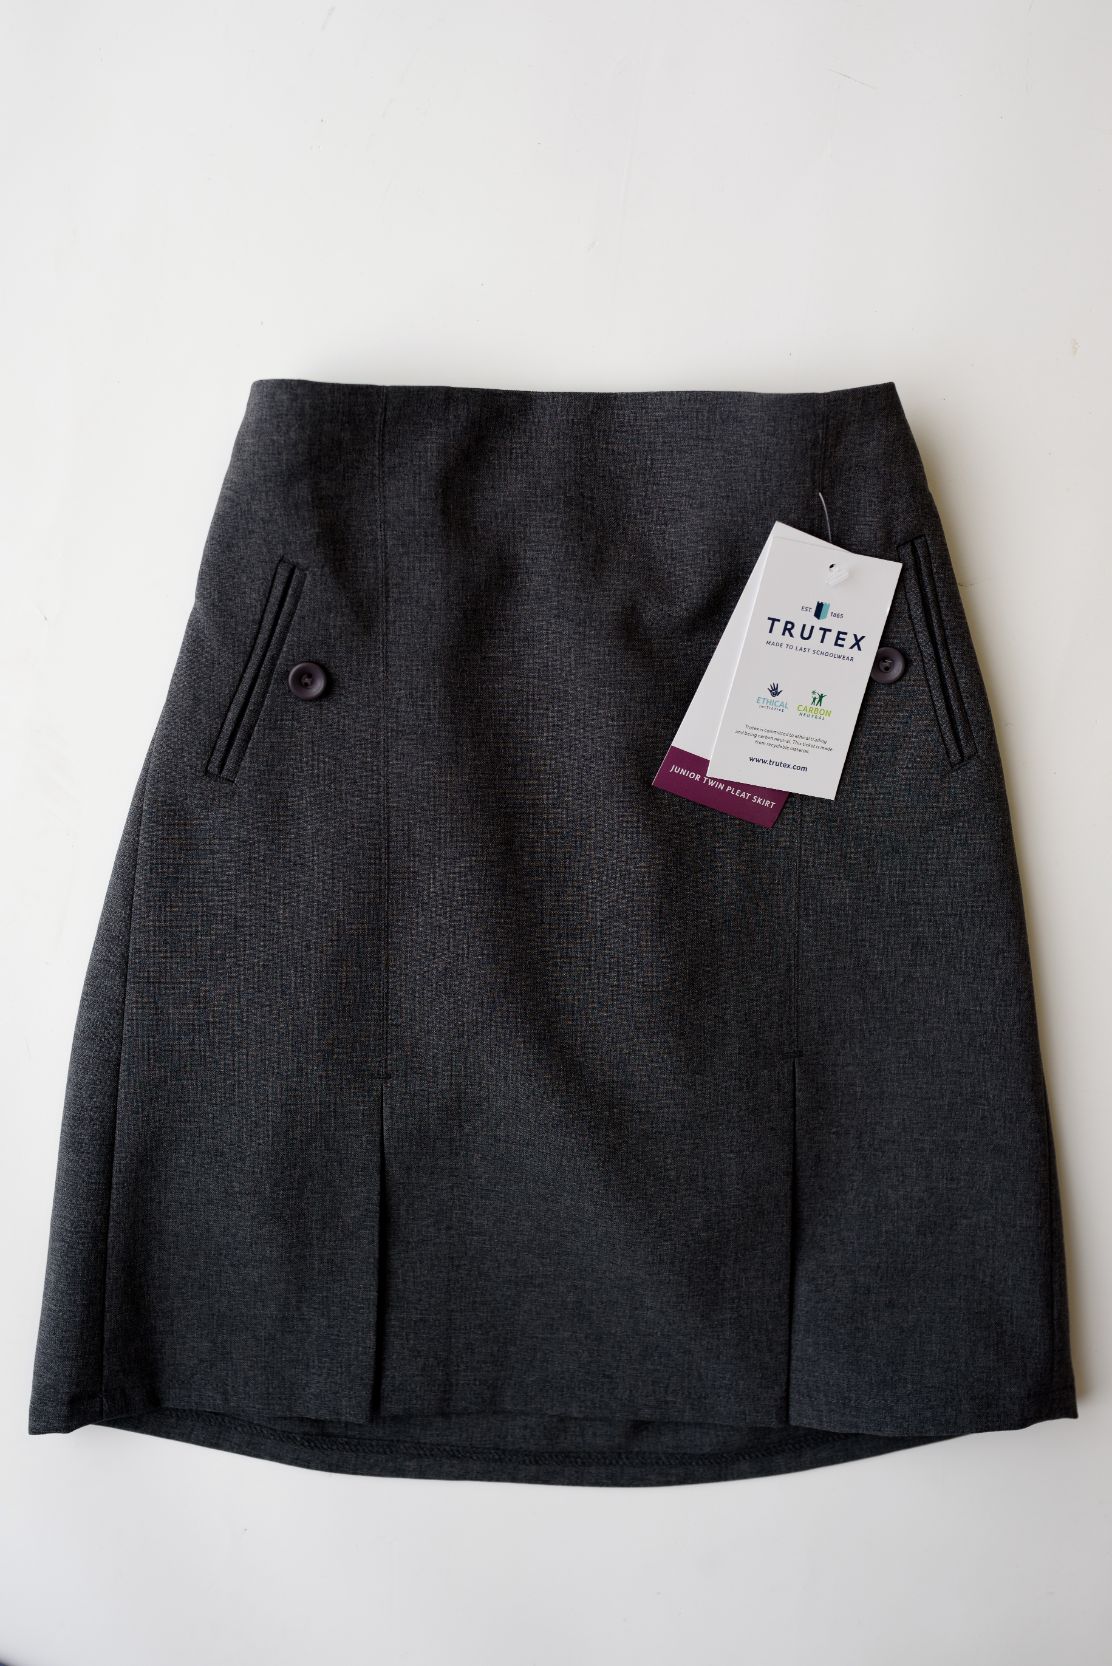 Trutex Grey School pleat skirt